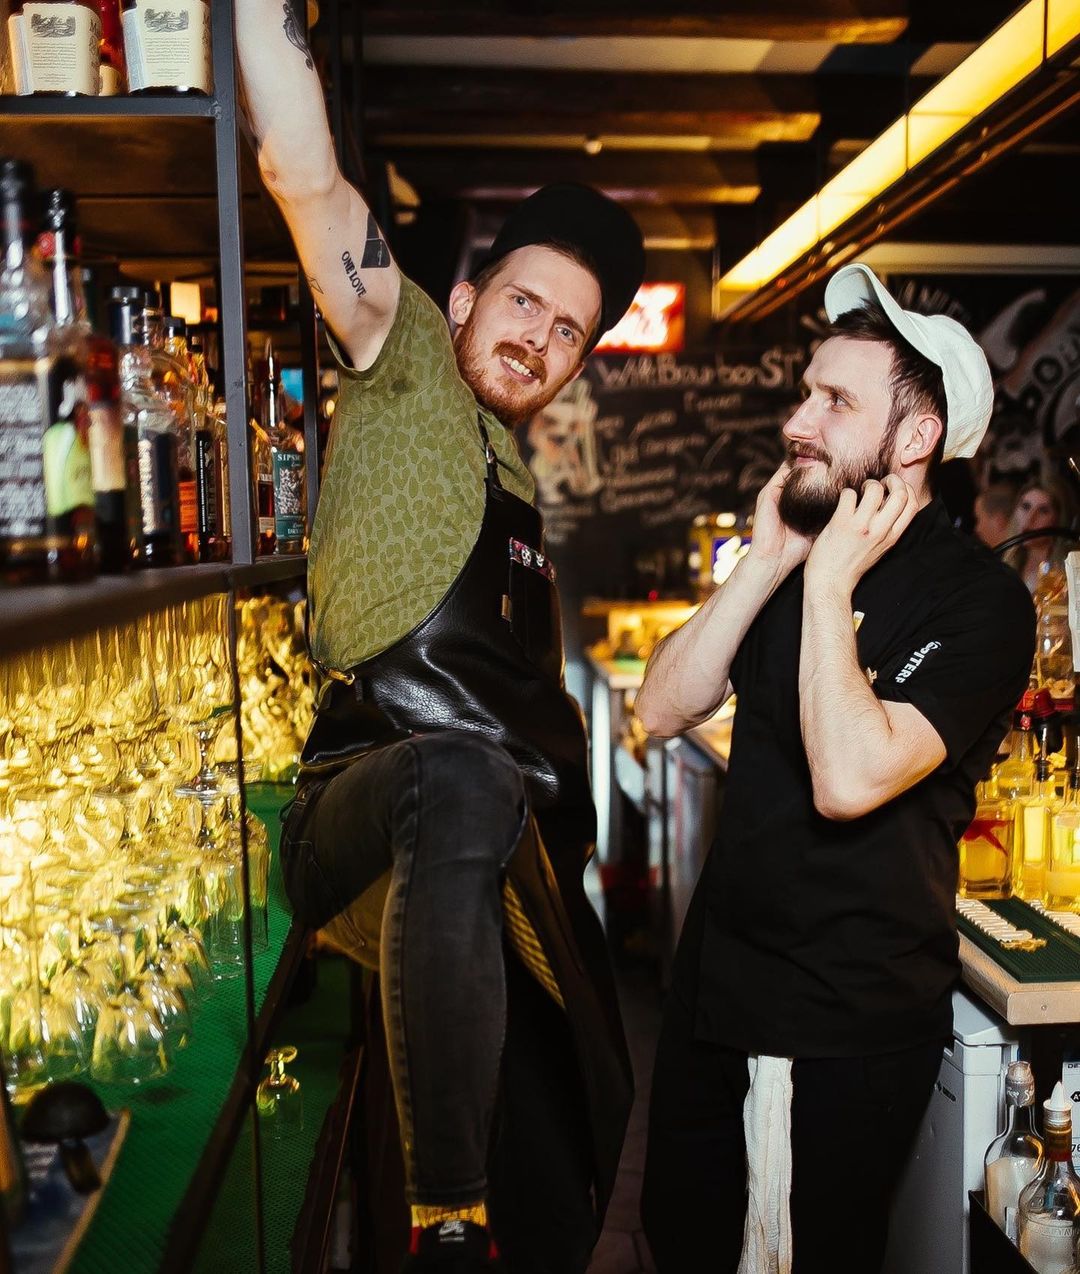 О современных реалиях барменской жизни, непростых гостях и поисках идеального коктейля на вечер рассказывает профессионал своего дела Никита Кириленко.